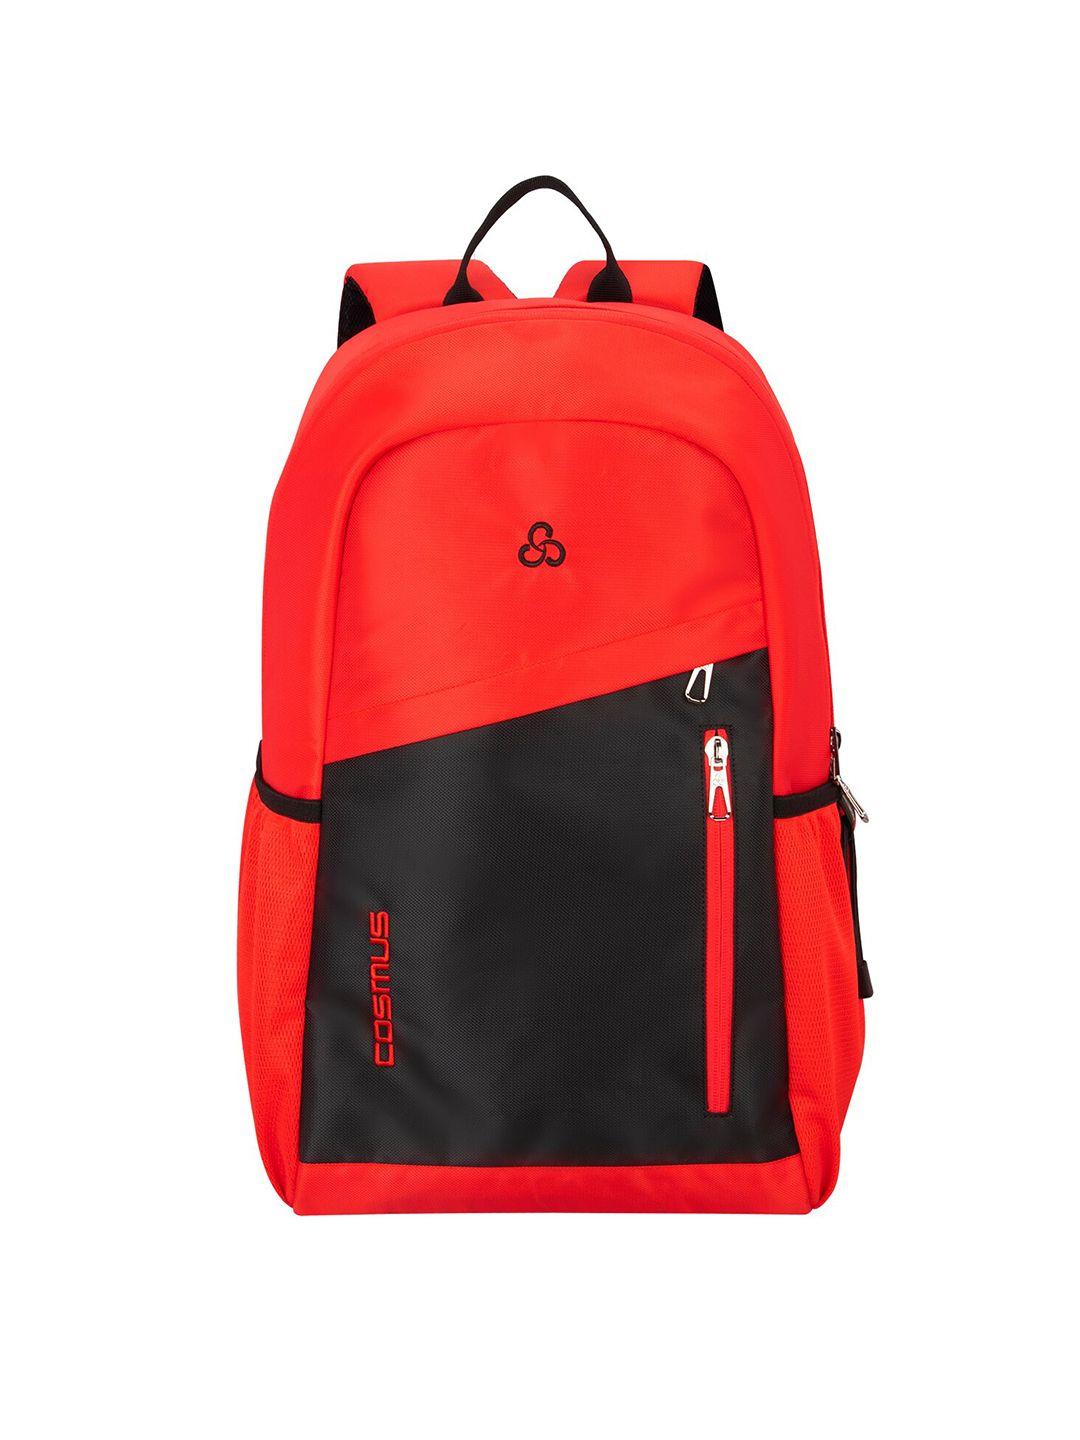 cosmus black & red laptop bag